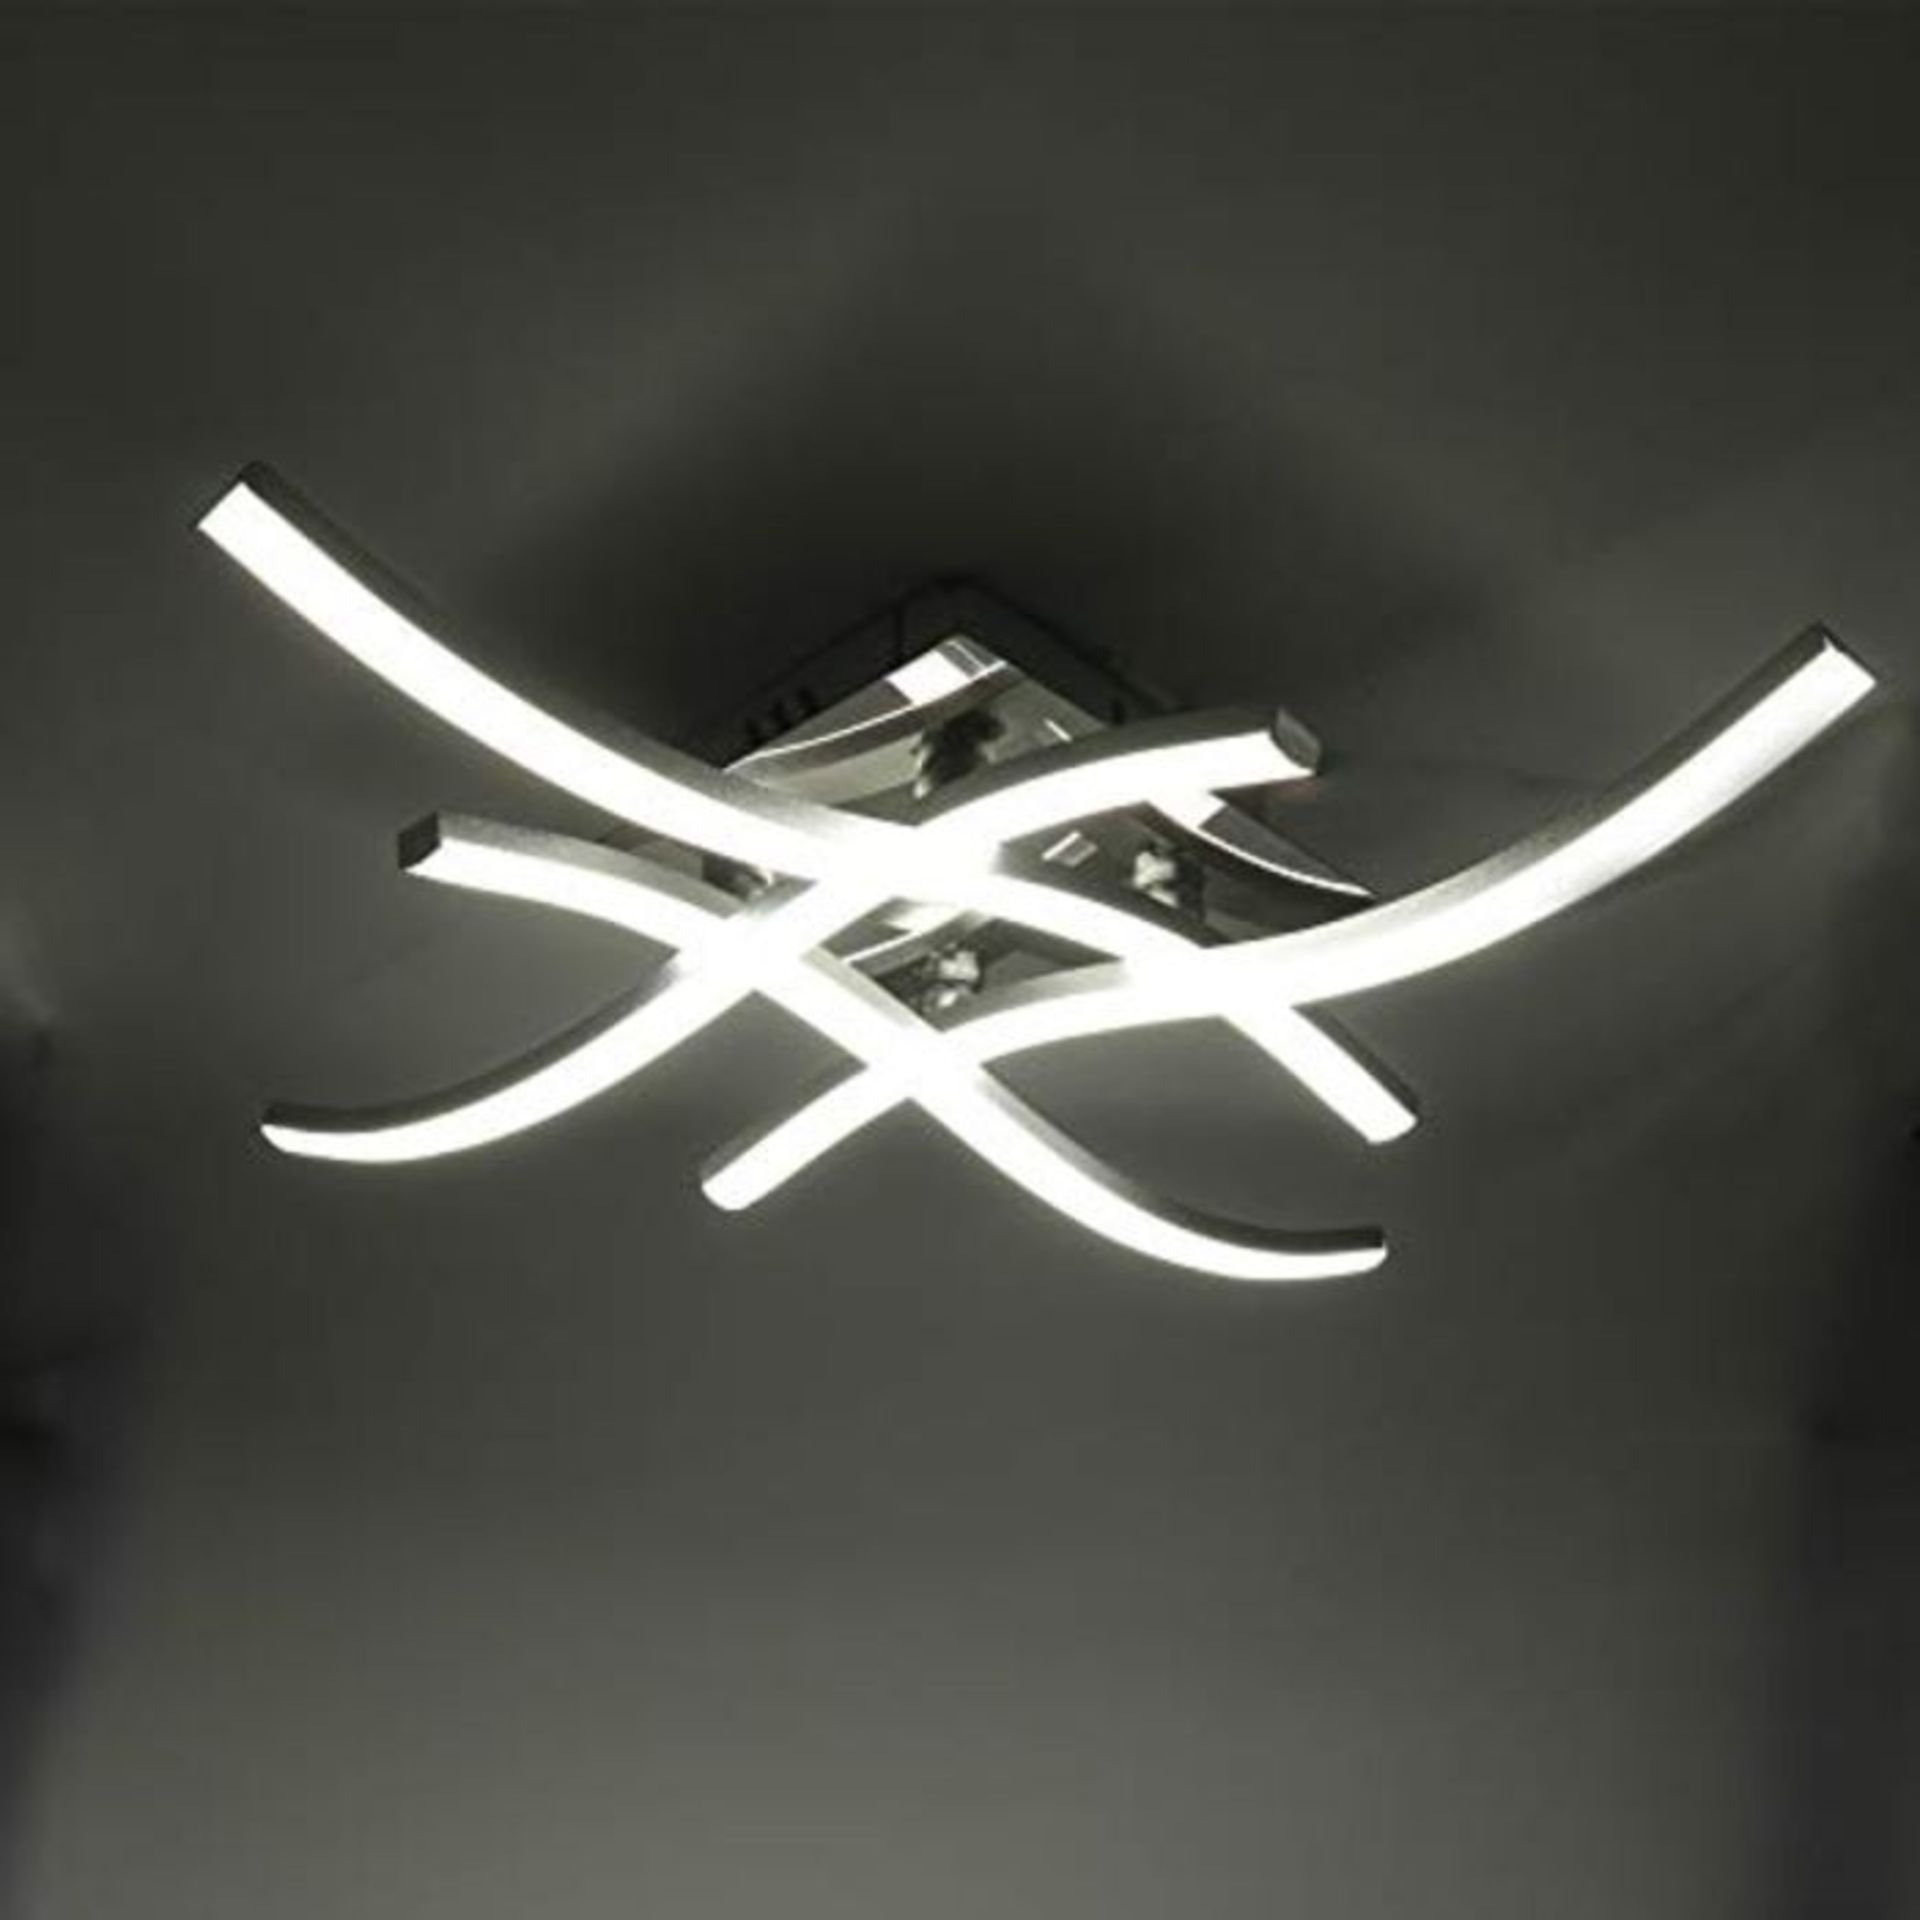 4 Curved Design Boards LED Ceiling Light,Neutral White Light 6000K, 28W Modern Ceiling